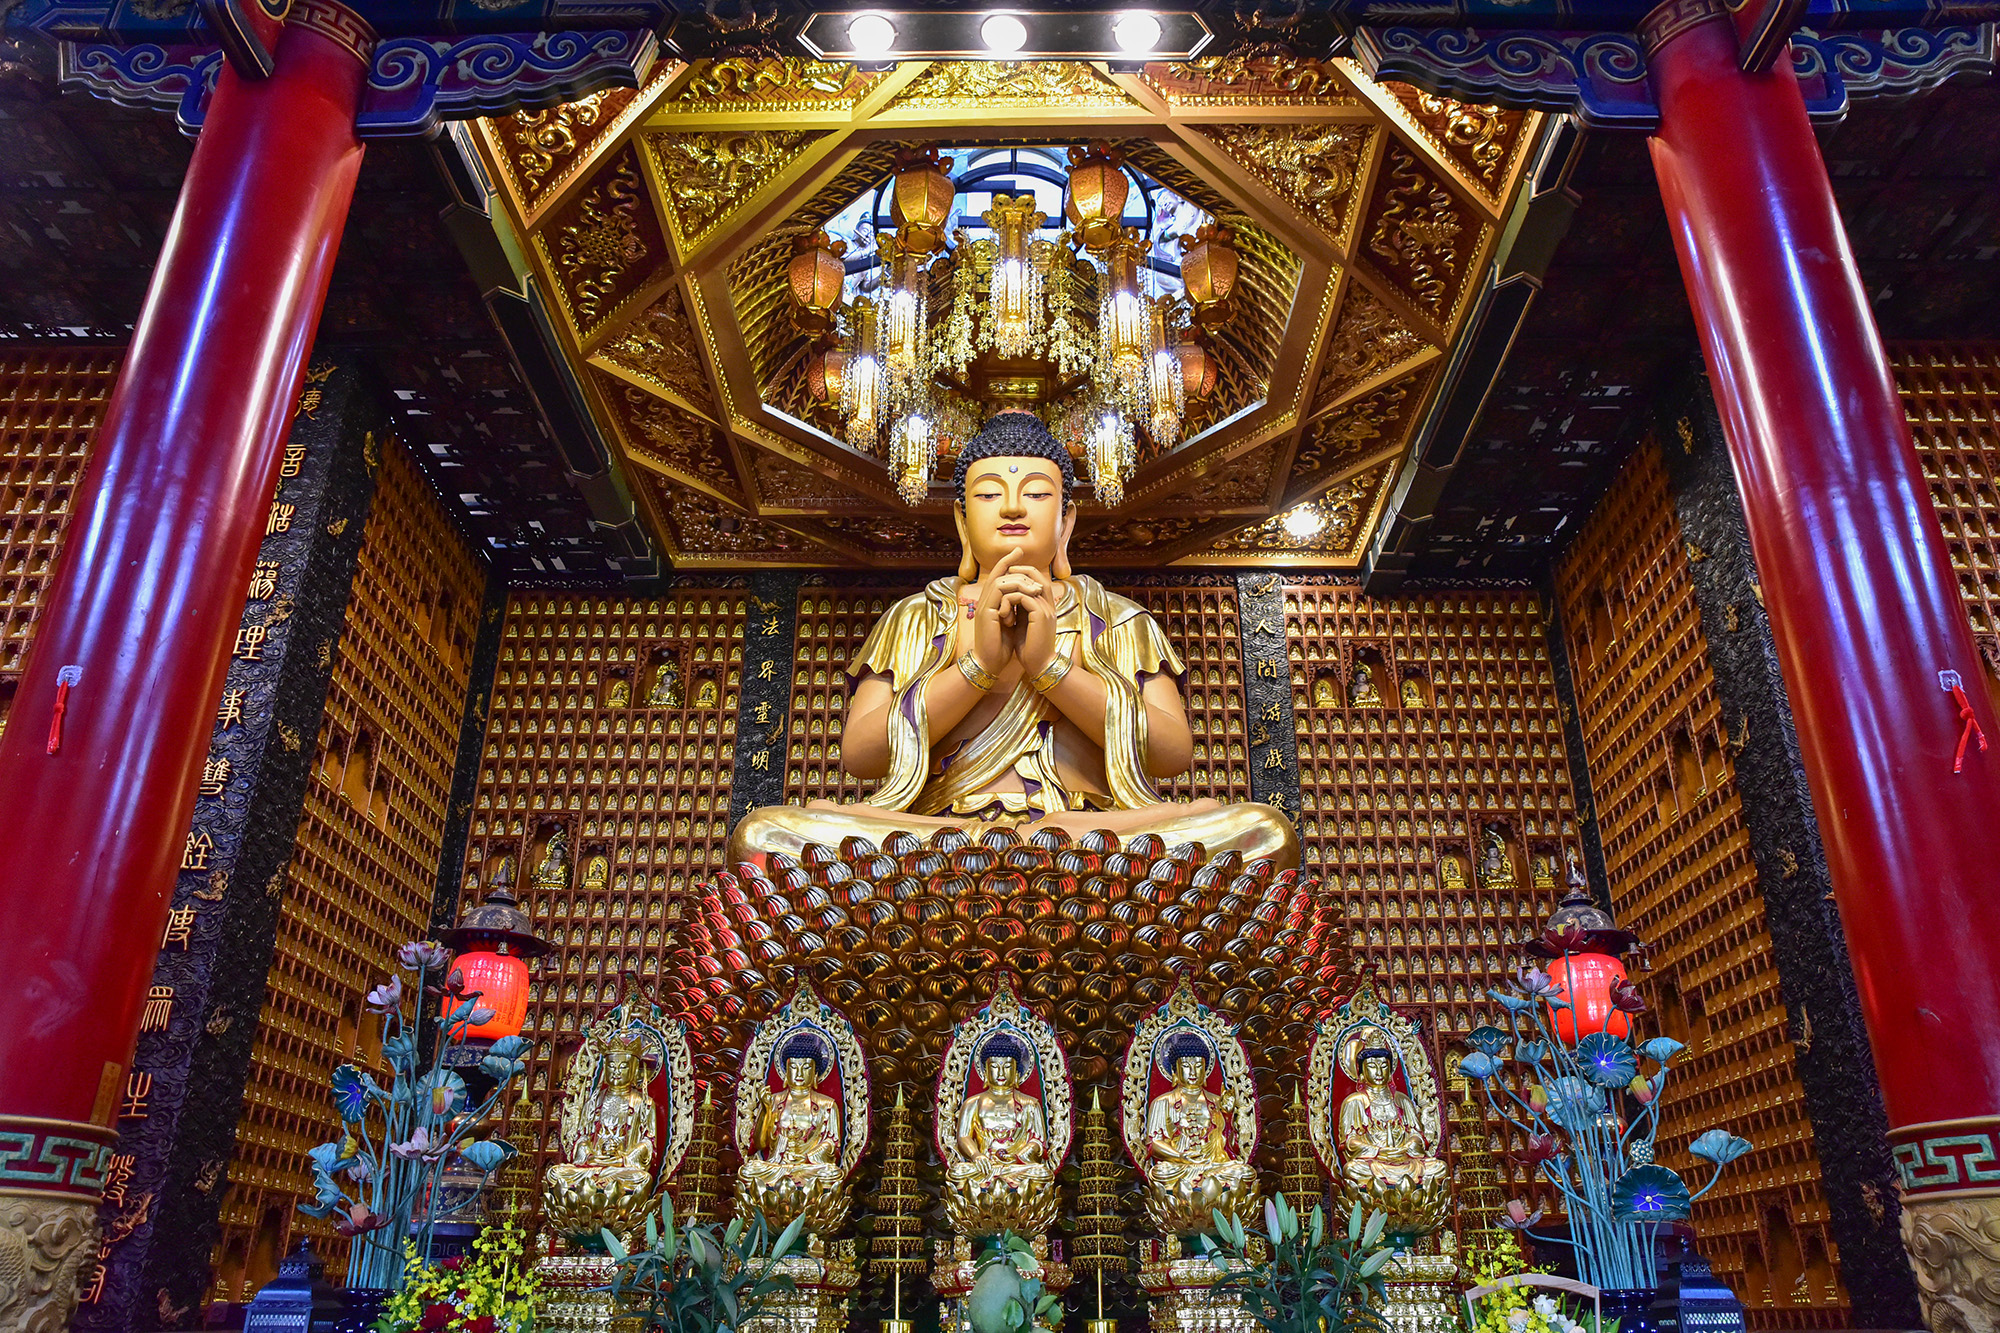 Kỳ vĩ chánh điện chùa trưng biện 10.000 tượng Phật ở TP.HCM - 3